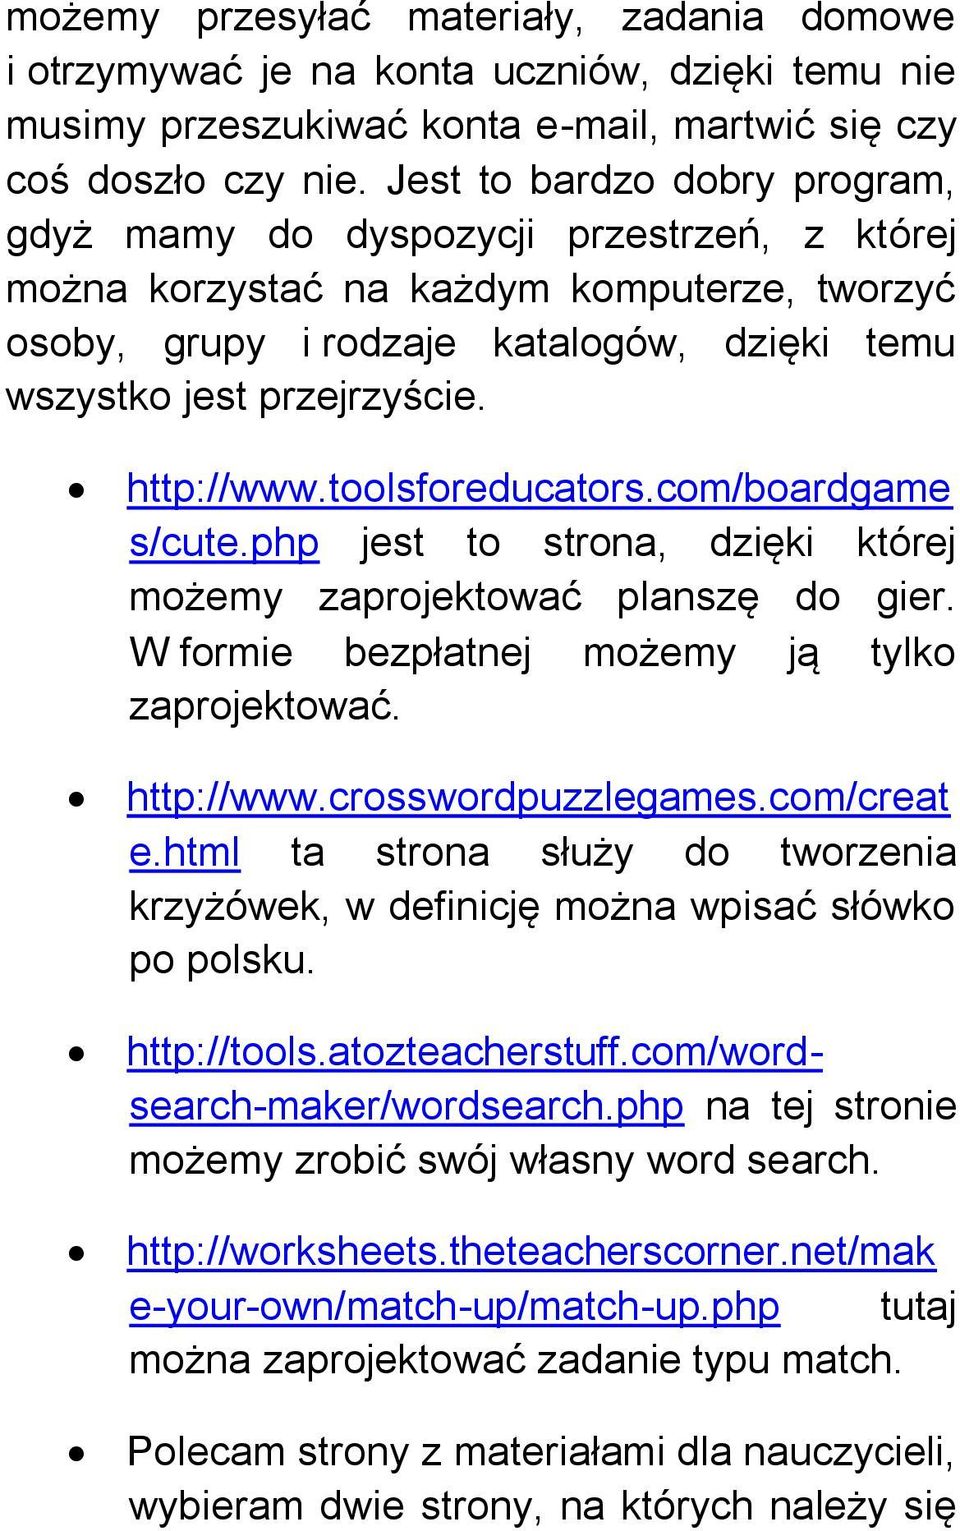 http://www.toolsforeducators.com/boardgame s/cute.php jest to strona, dzięki której możemy zaprojektować planszę do gier. W formie bezpłatnej możemy ją tylko zaprojektować. http://www.